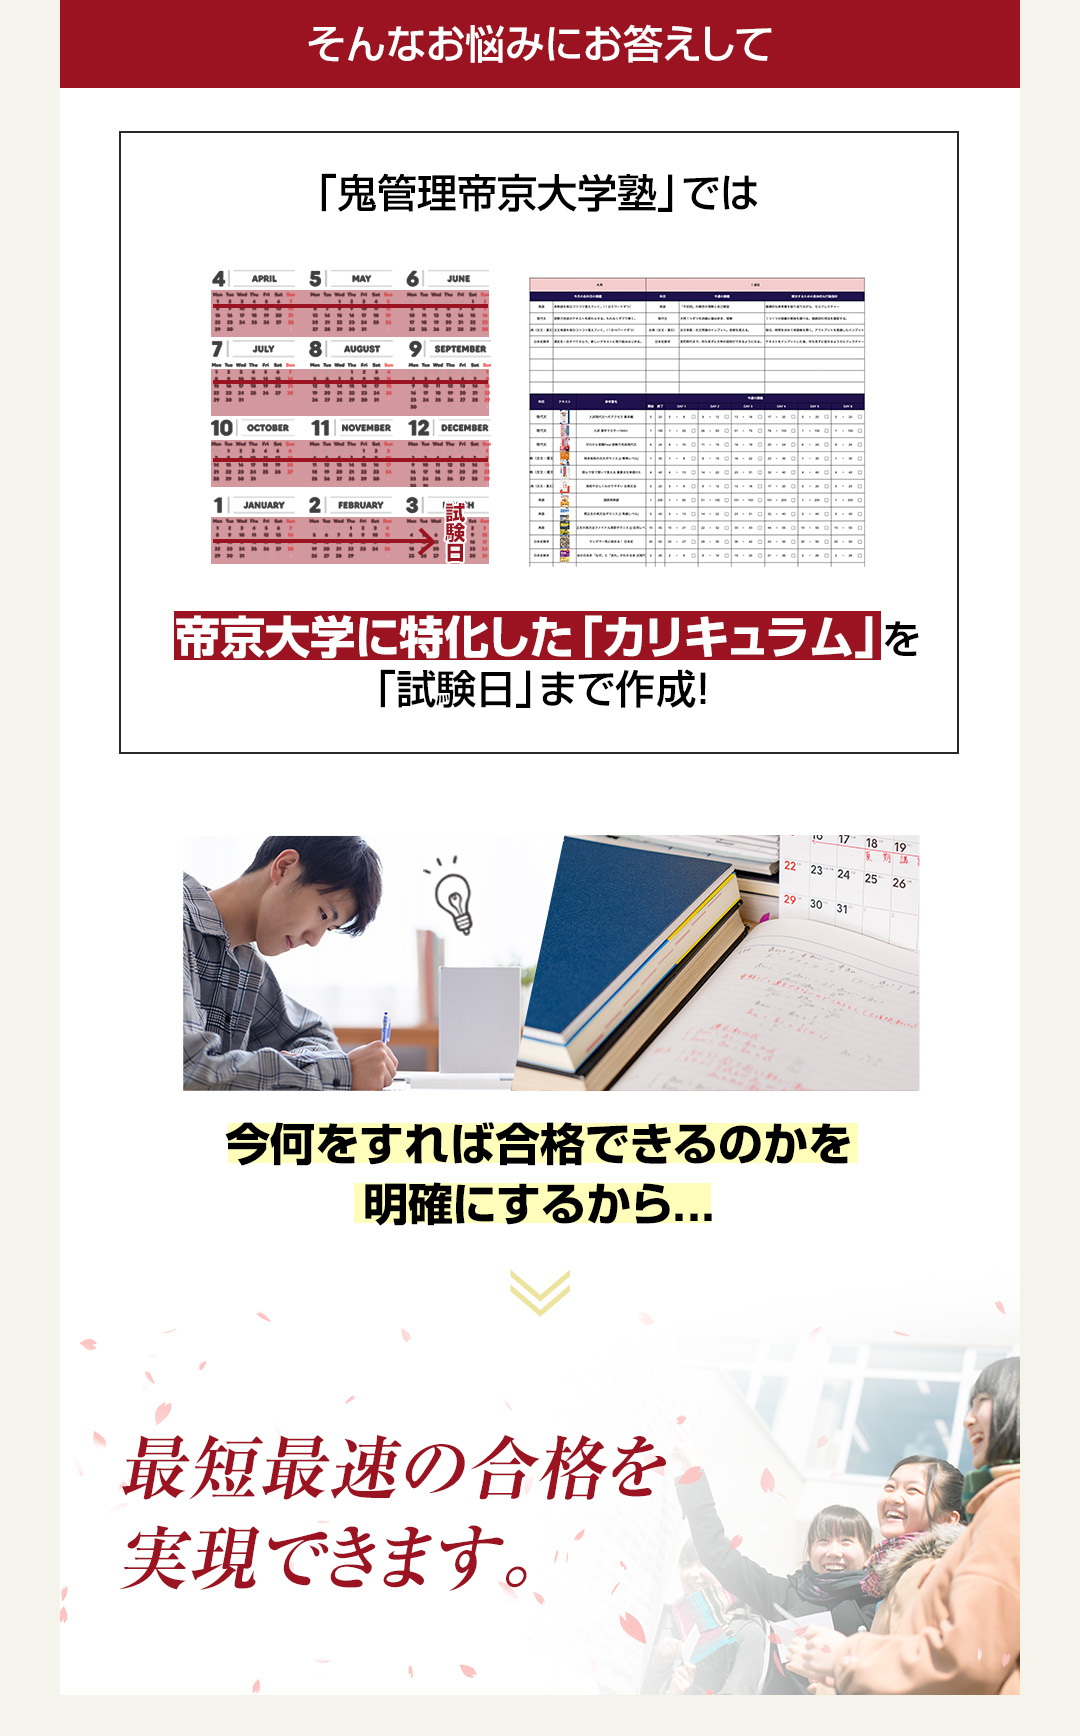 「鬼管理帝京大学塾」では帝京大学に特化した「カリキュラム」を「試験日」まで作成